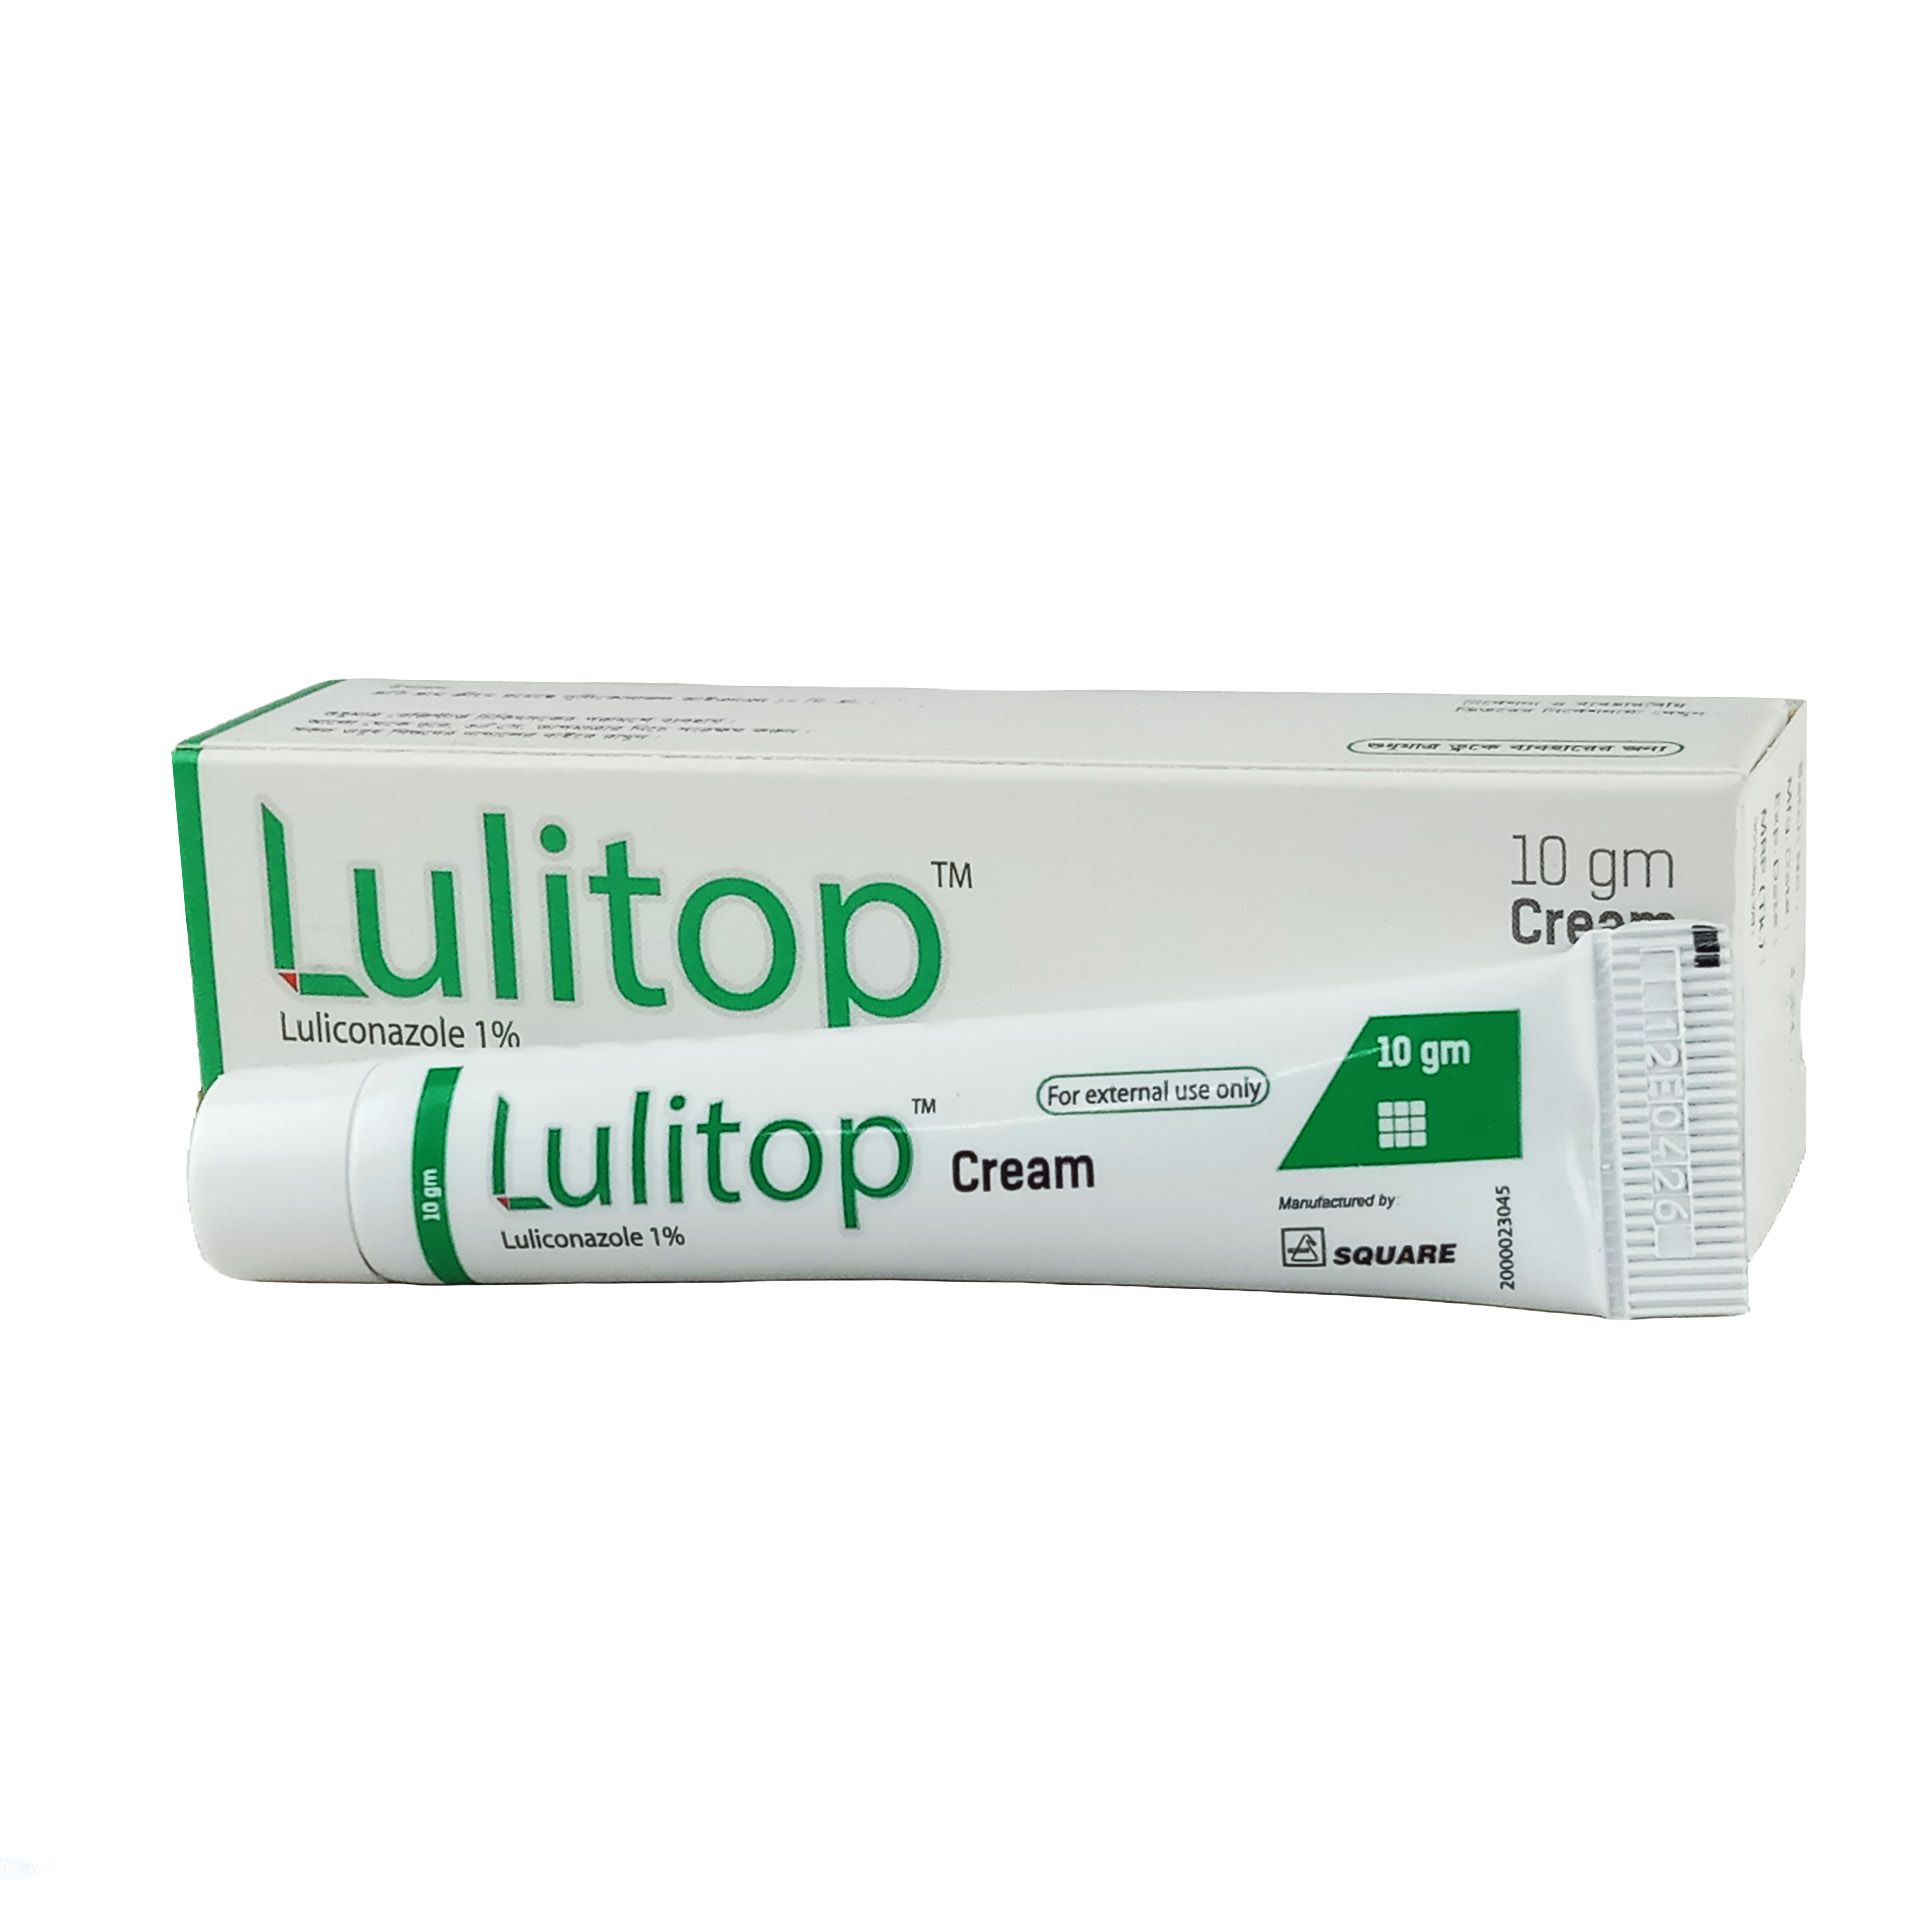 Lulitop 1% Cream